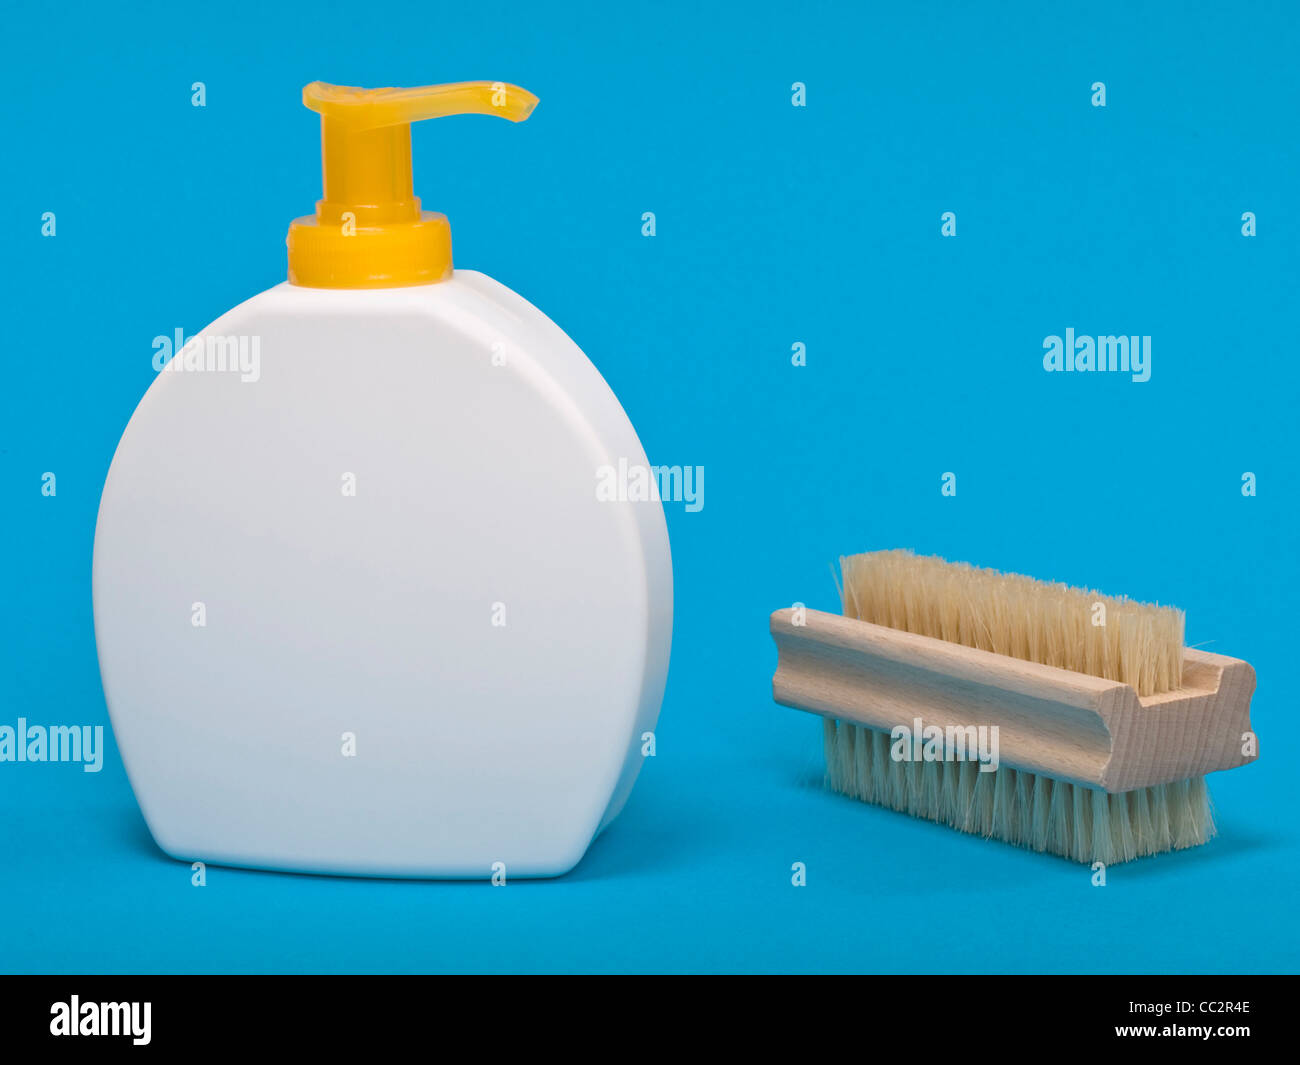 Dettaglio foto di un sapone liquido, oltre a è un Nailbrush Foto Stock